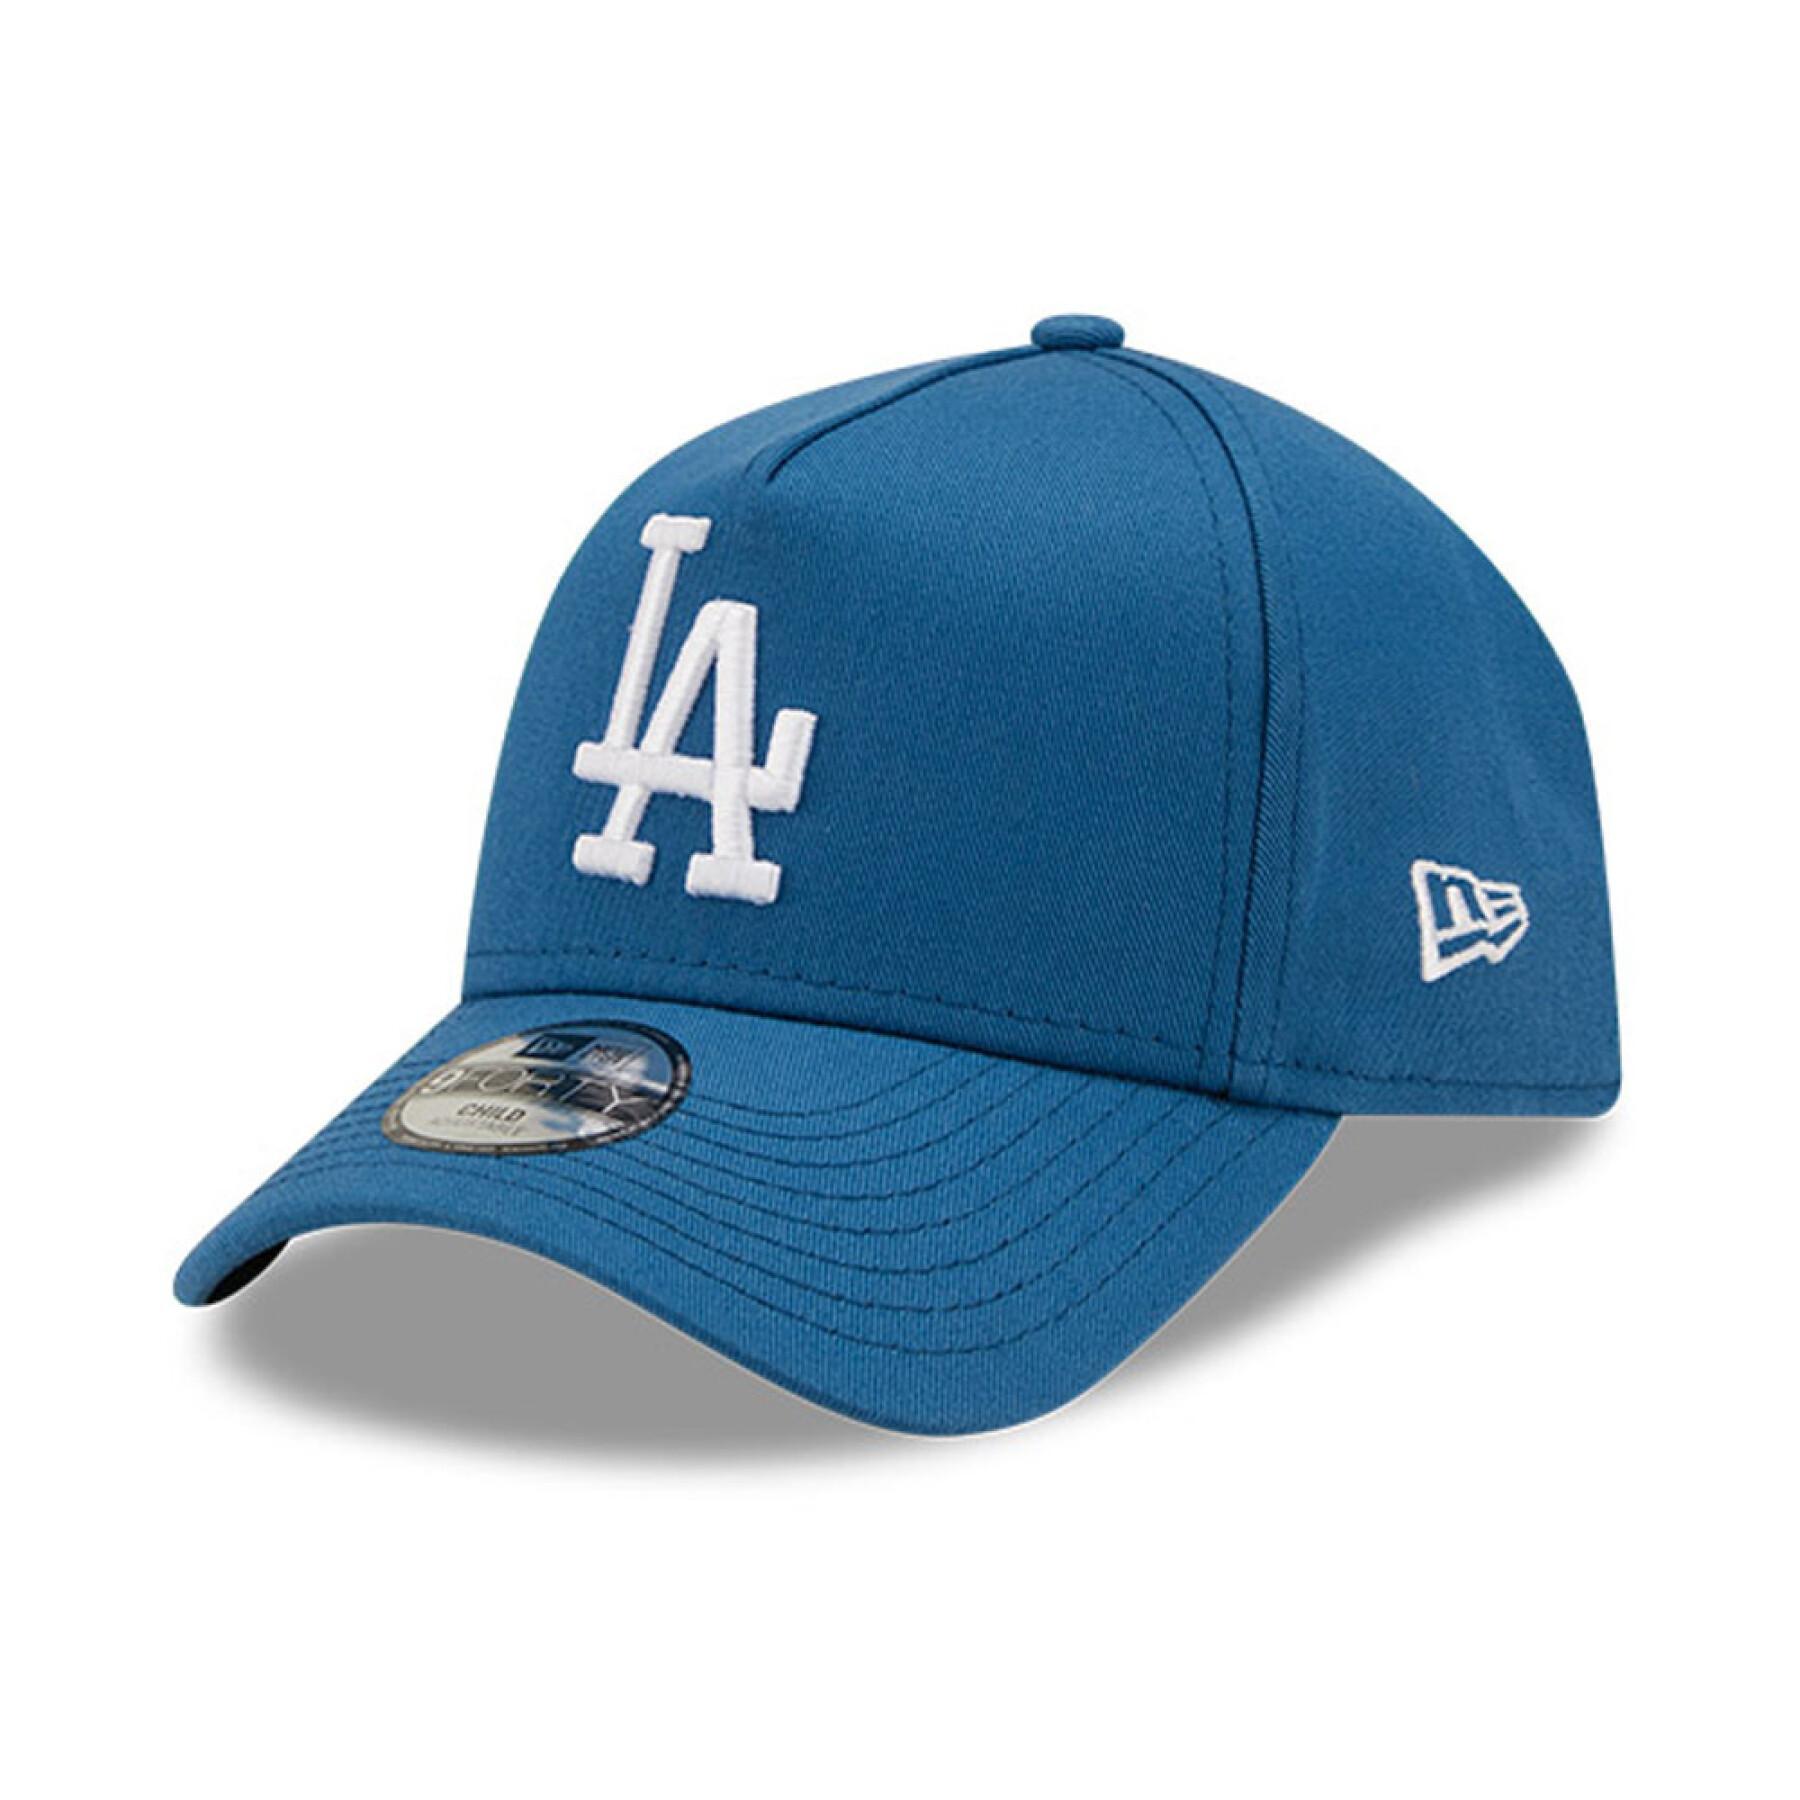 Children's cap Los Angeles Dodgers colour essential